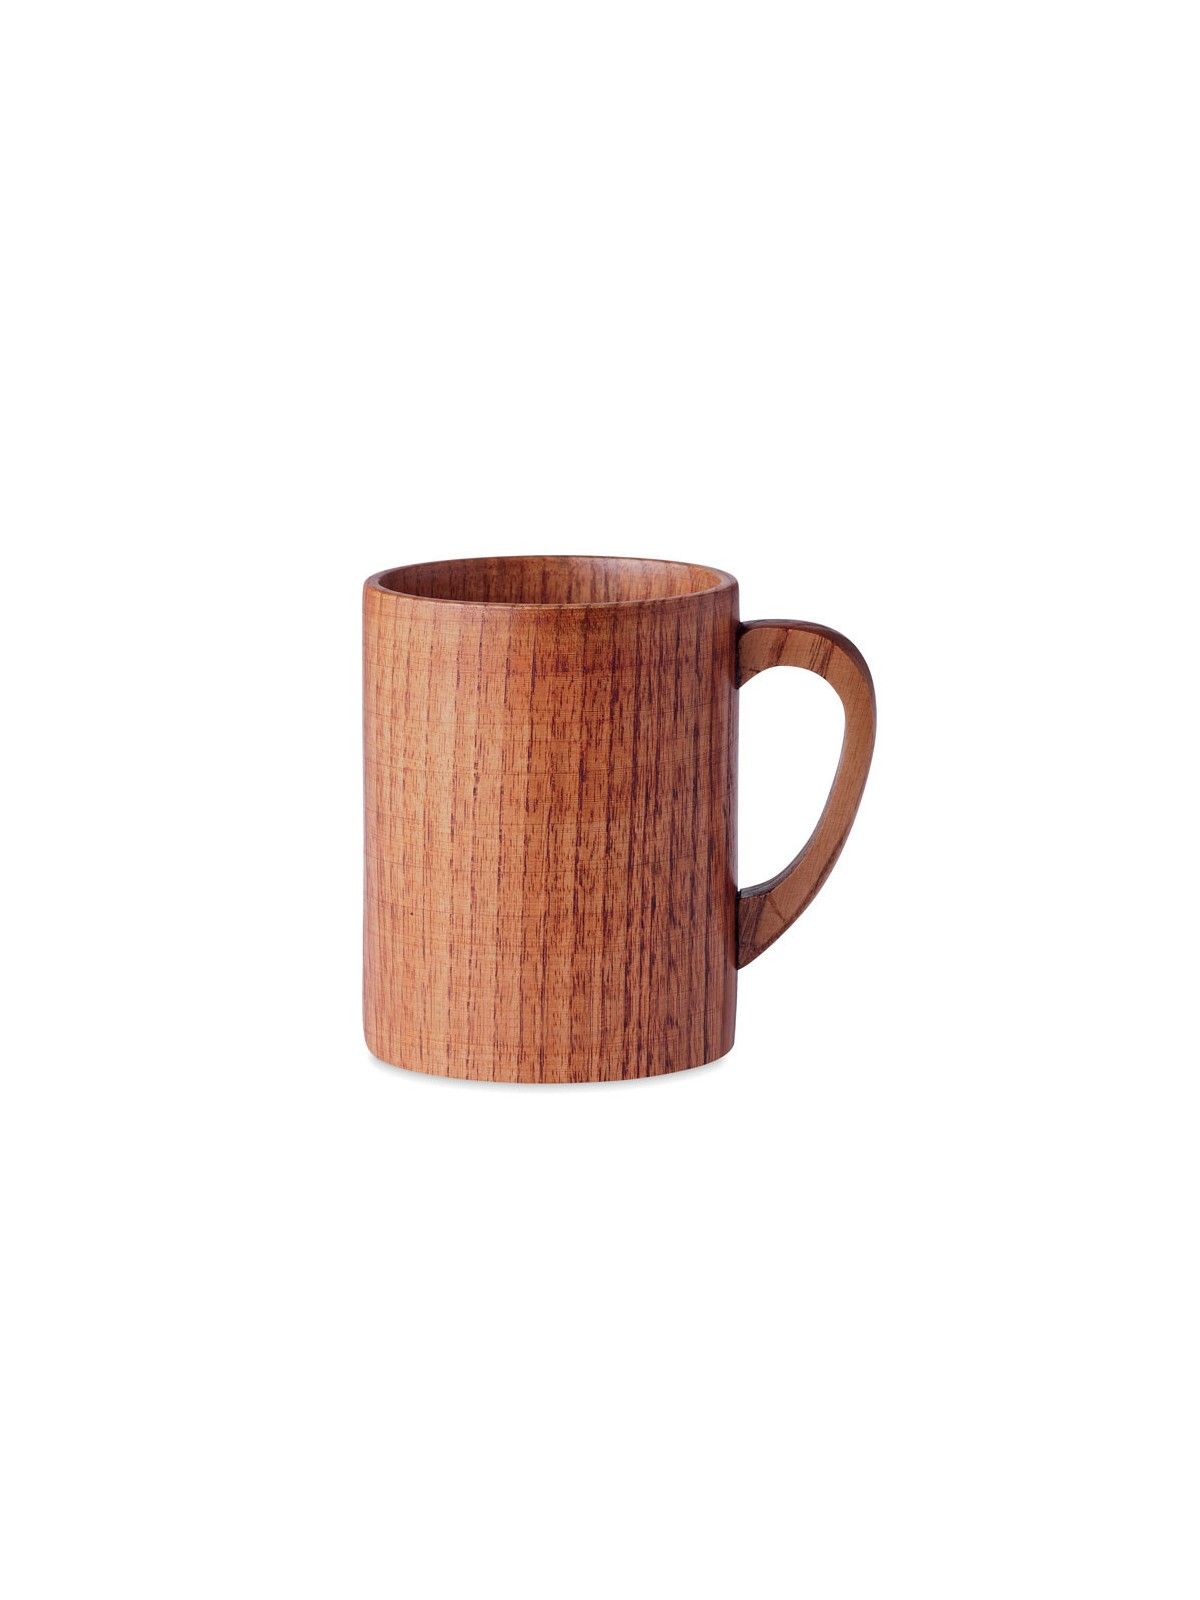 42-148 Mug en bois de chêne personnalisé